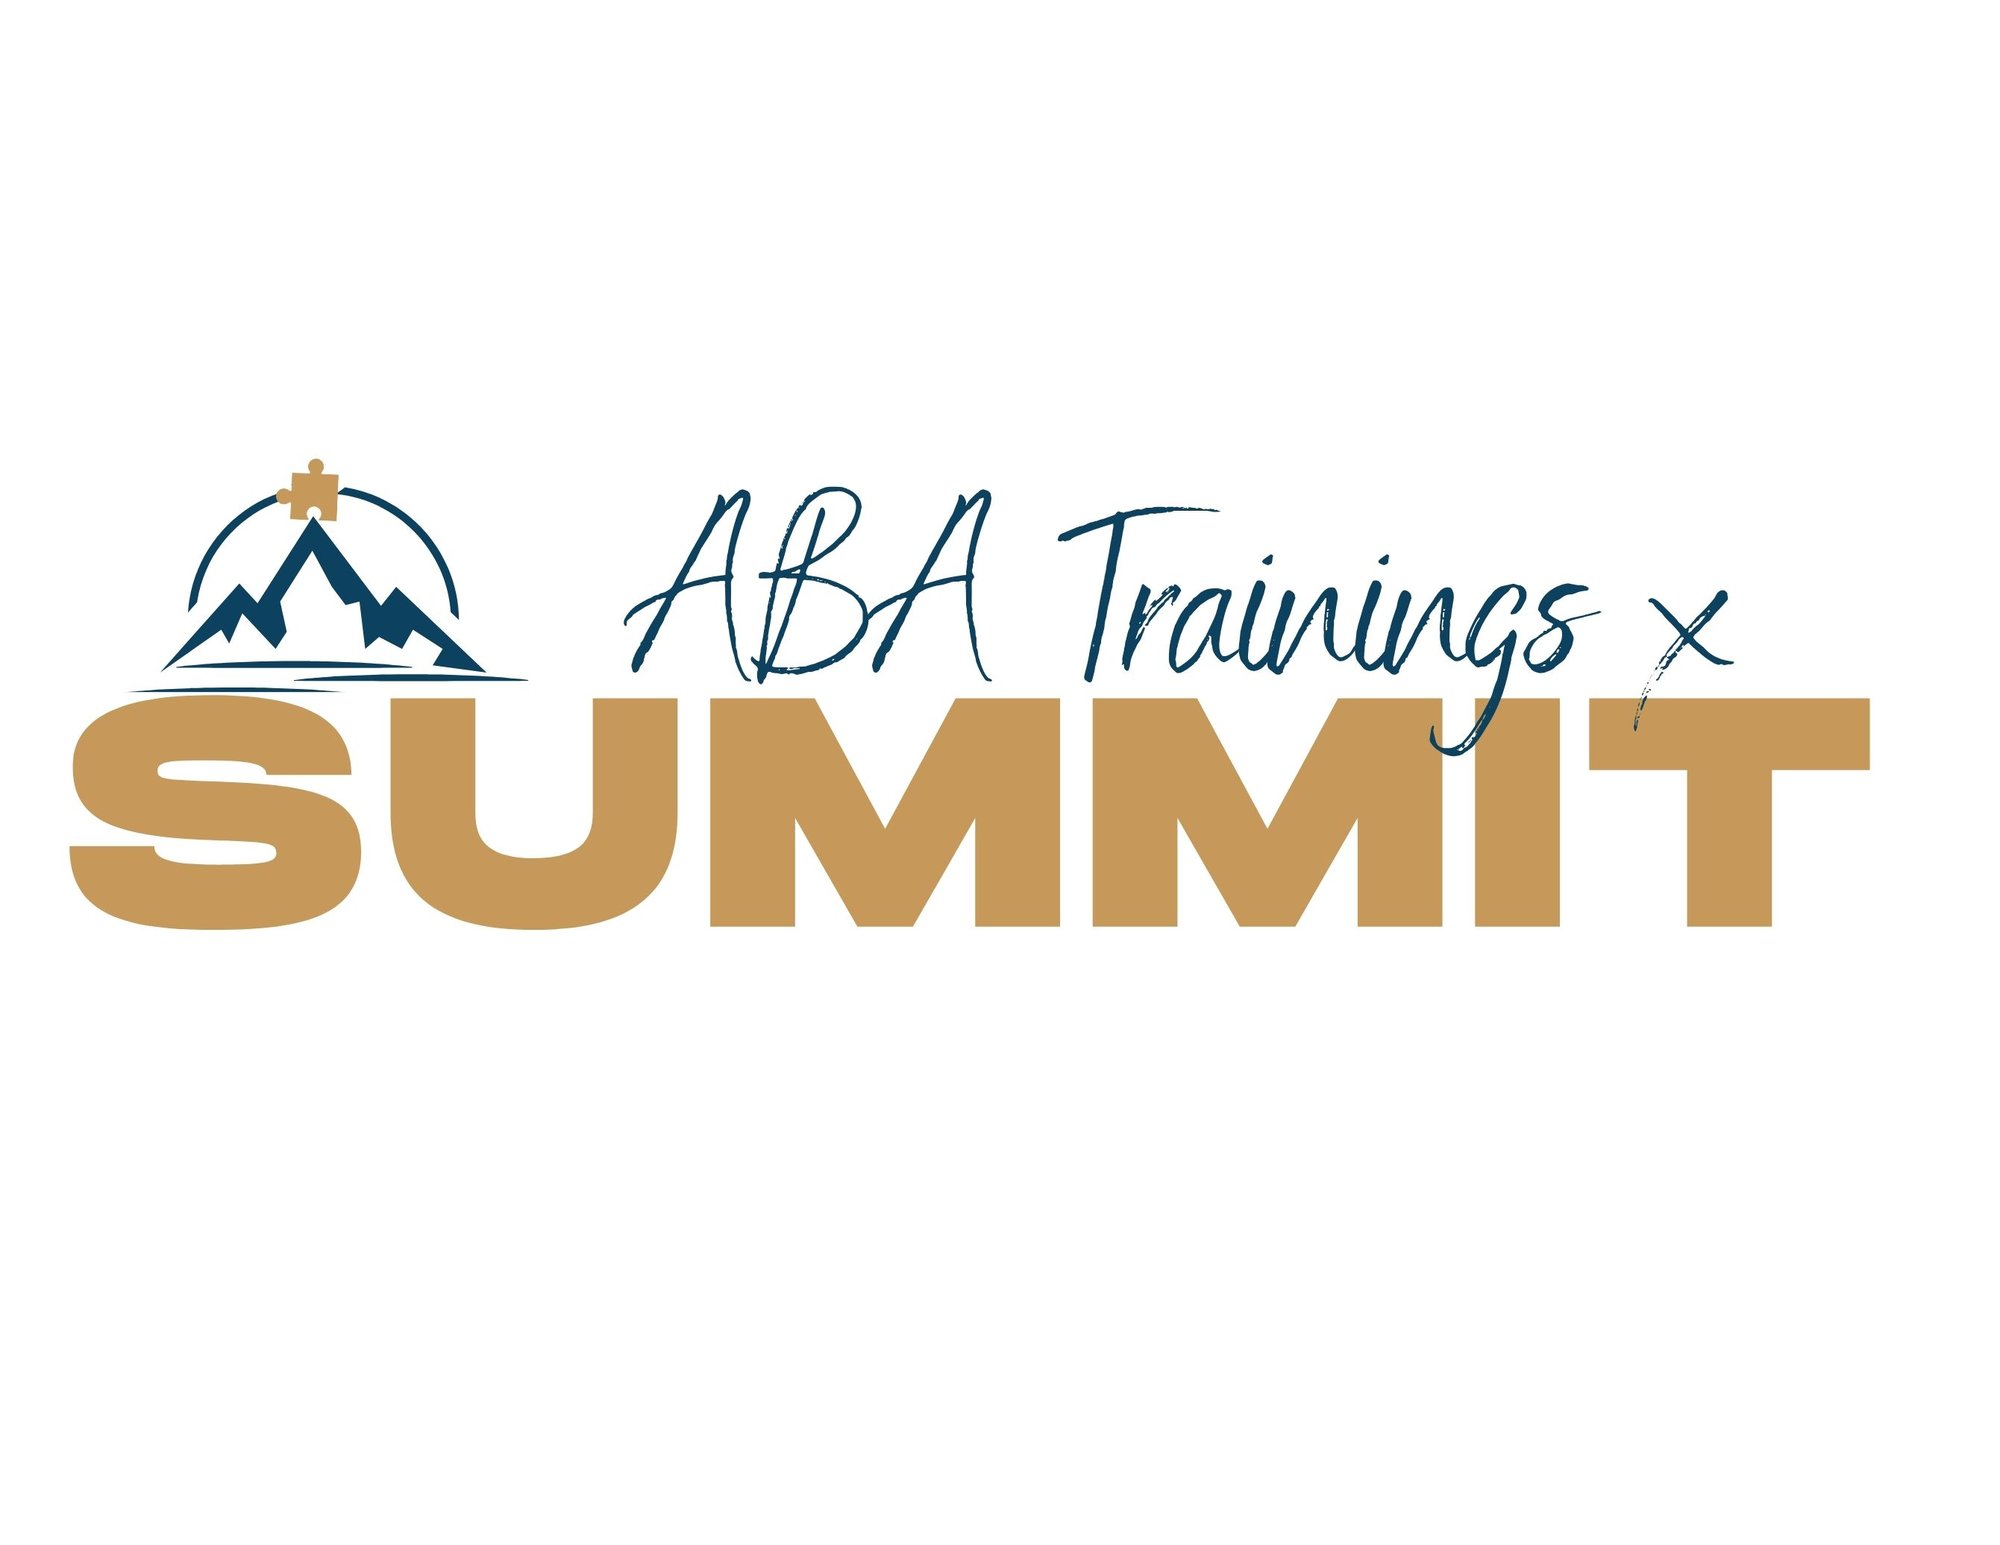 ABA Trainings X Summit Resized (1)